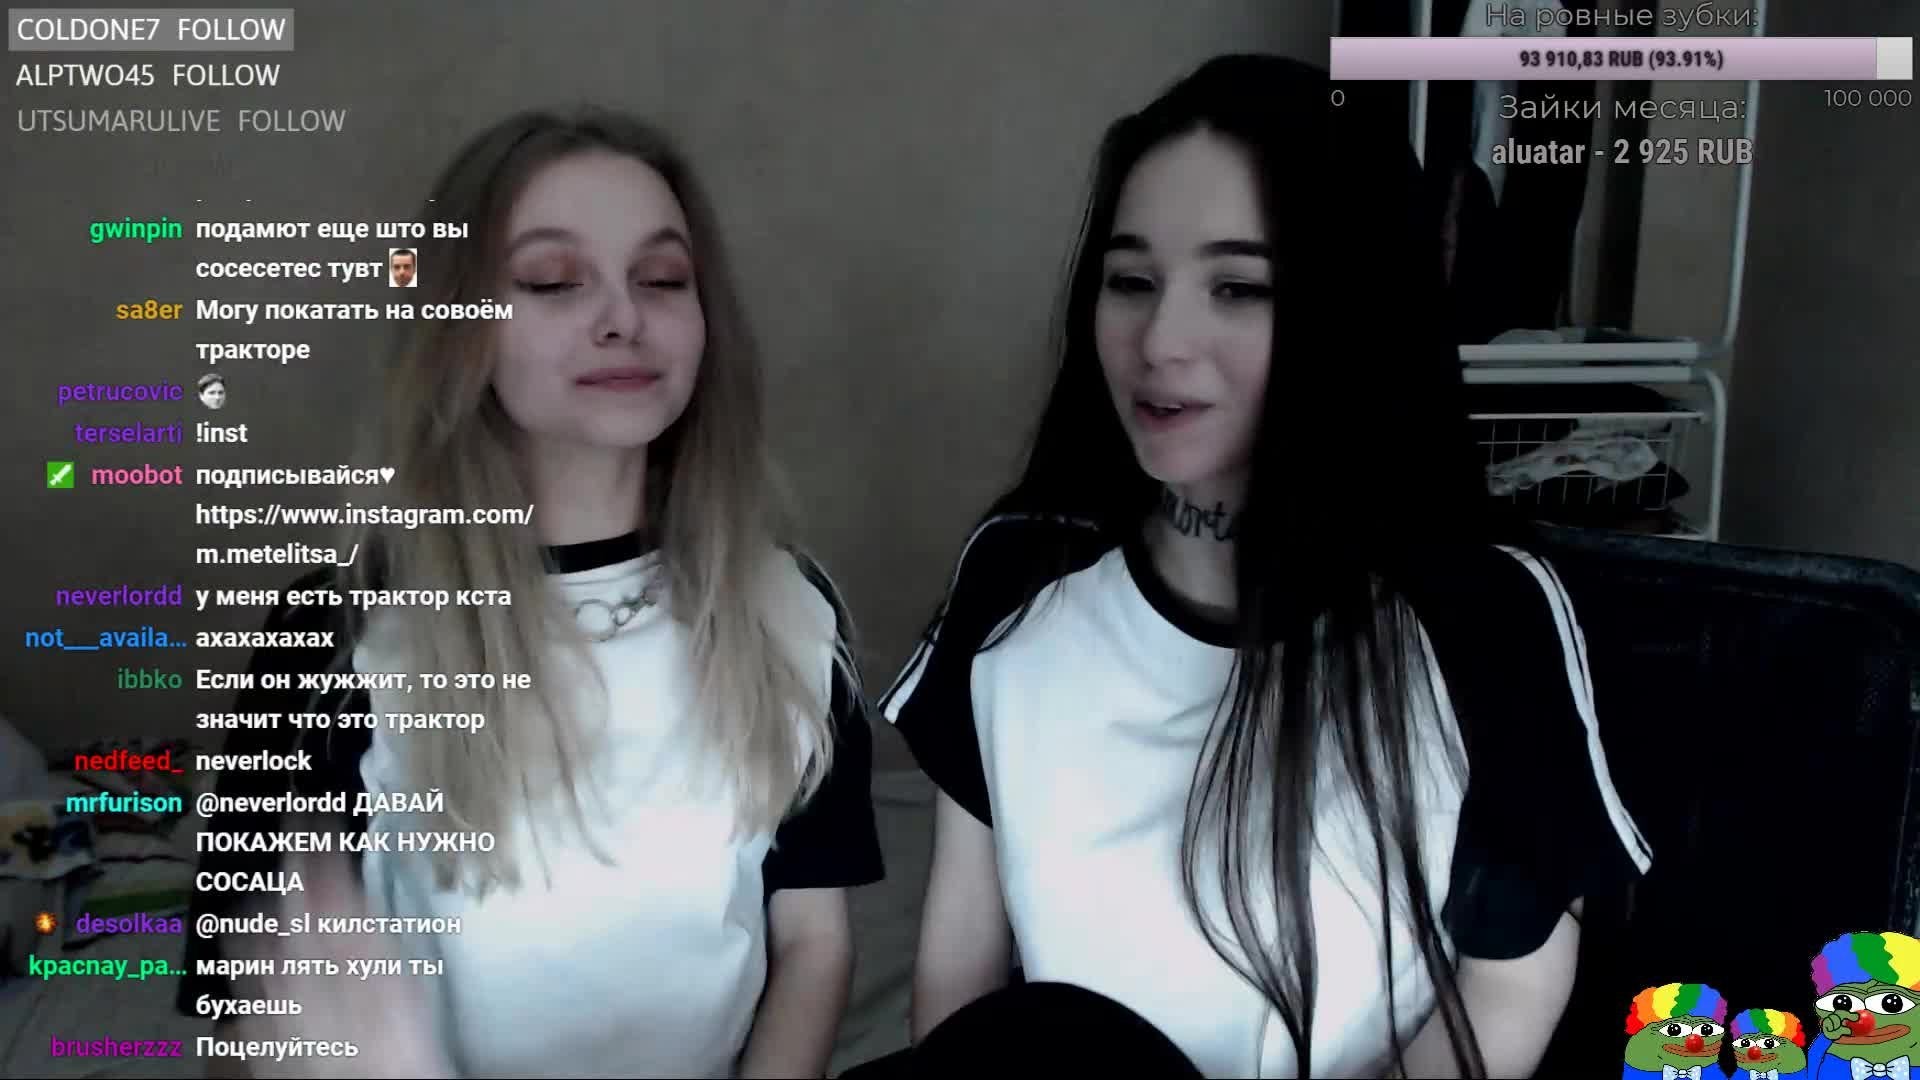 Russian girls make twitch stream